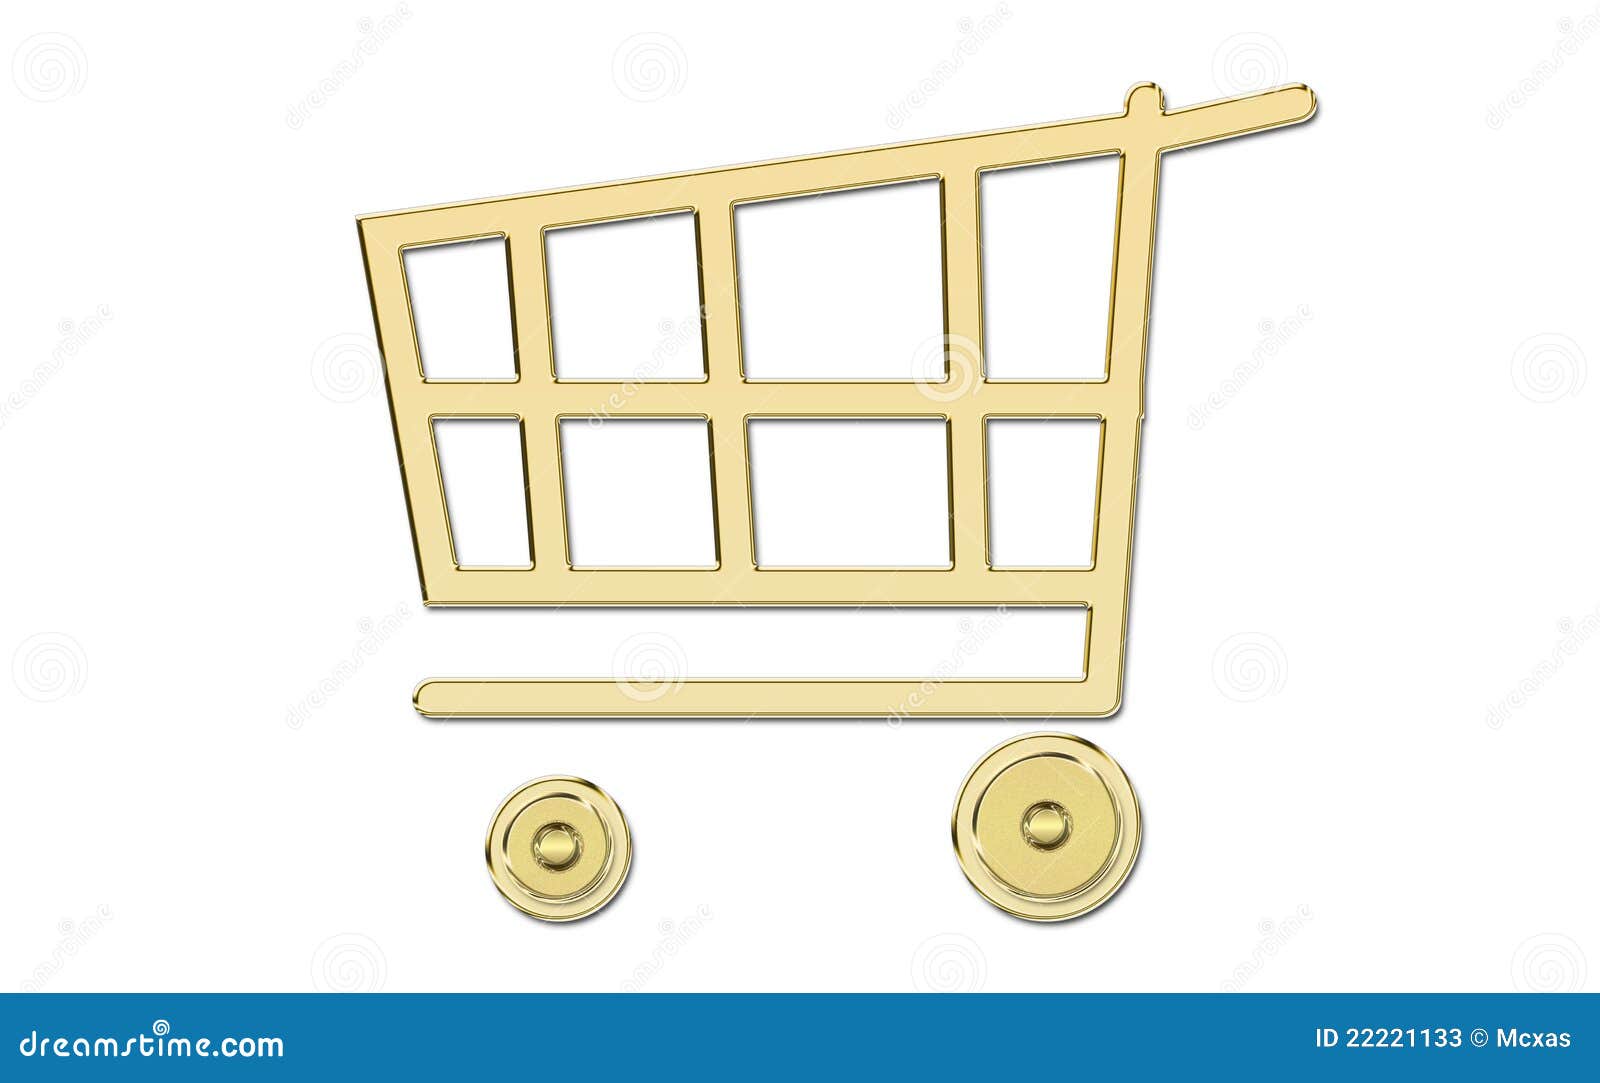 golden shopping cart